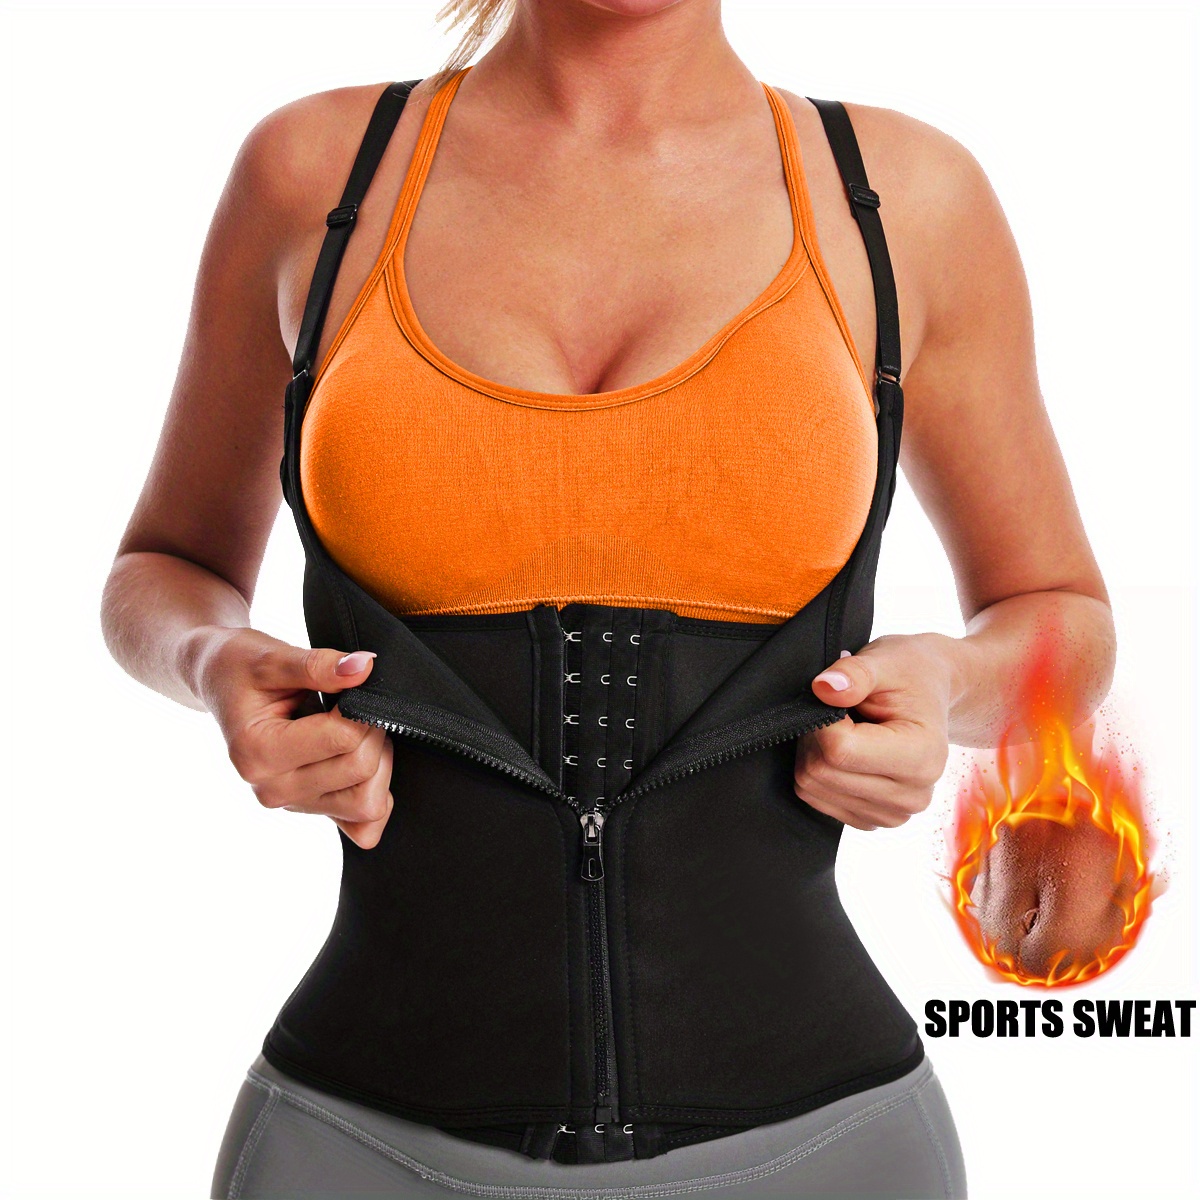 1pc Women's Sports Sweat Sauna Vest, Tight Body Shaper Tank Top